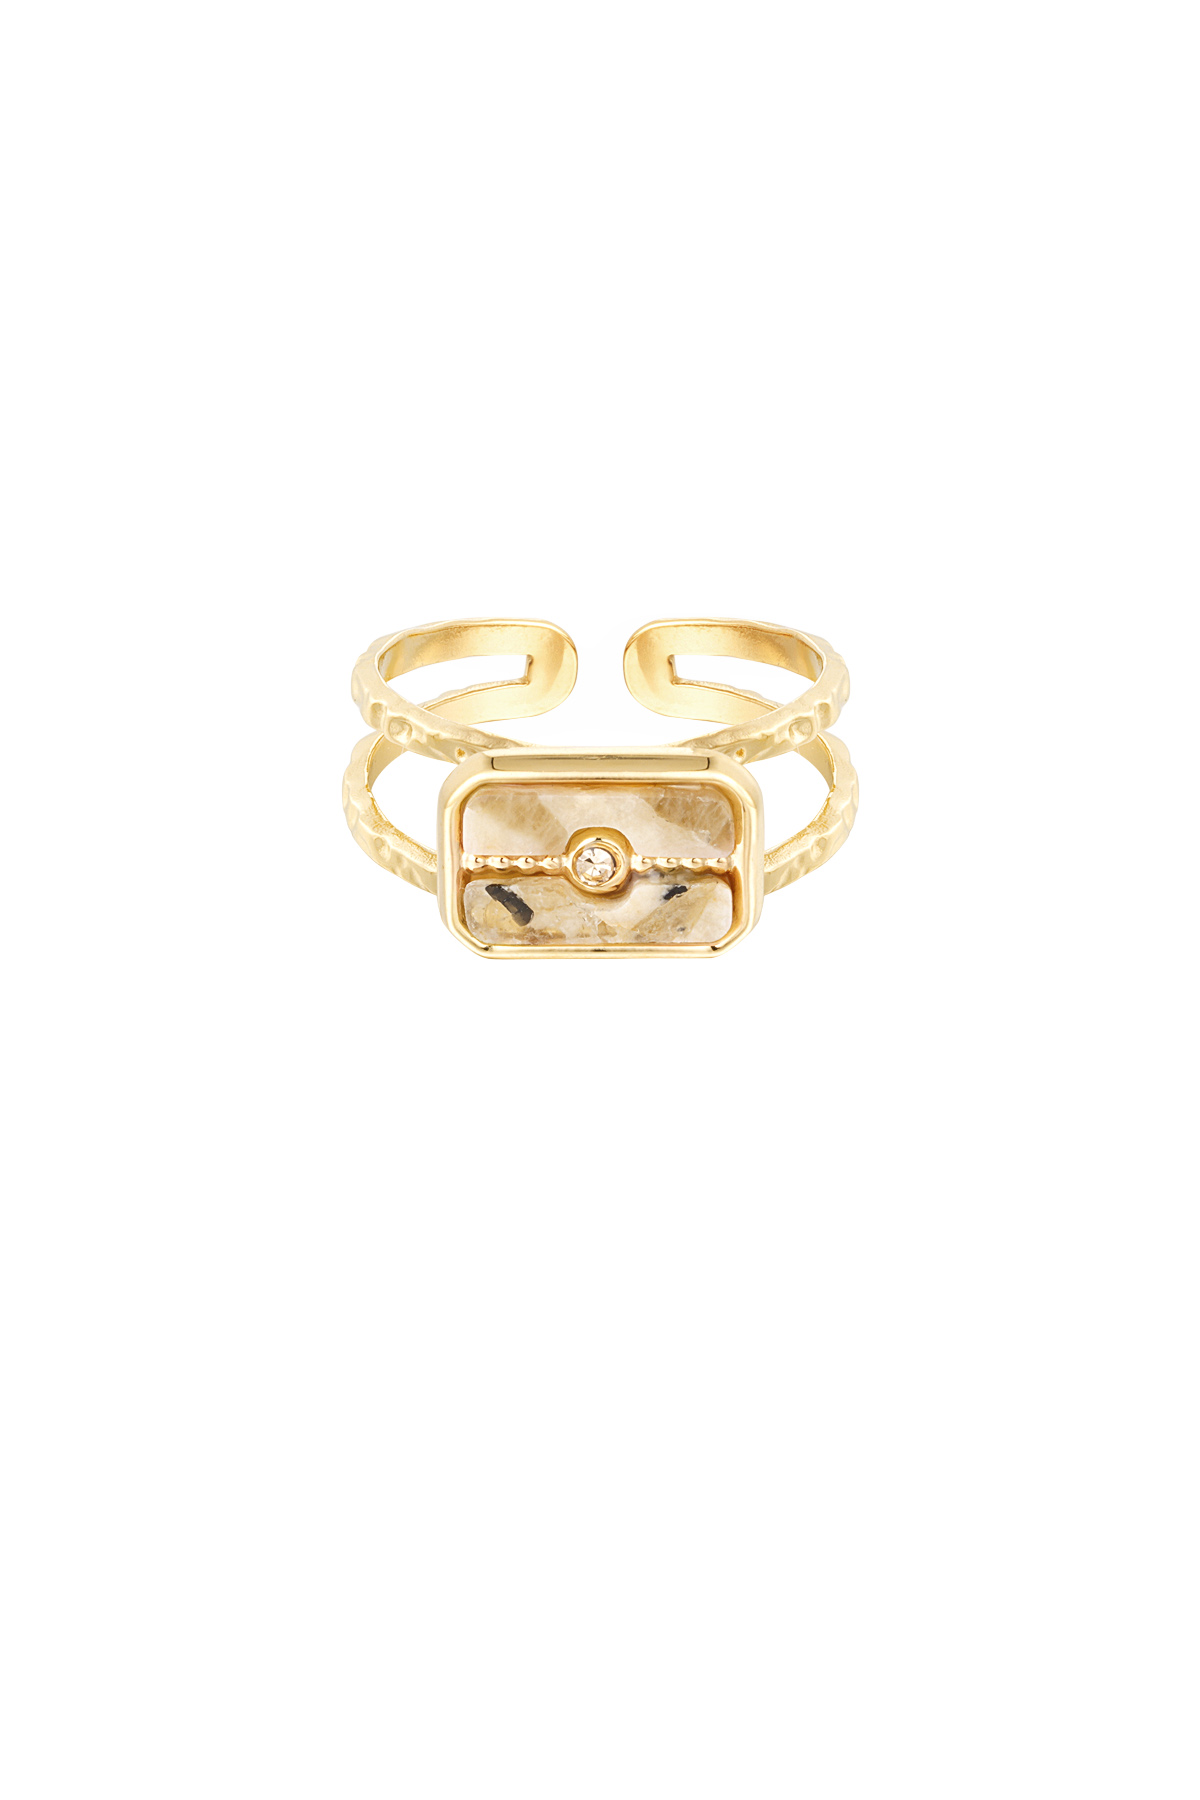 Ring versierde steen - goud/beige h5 